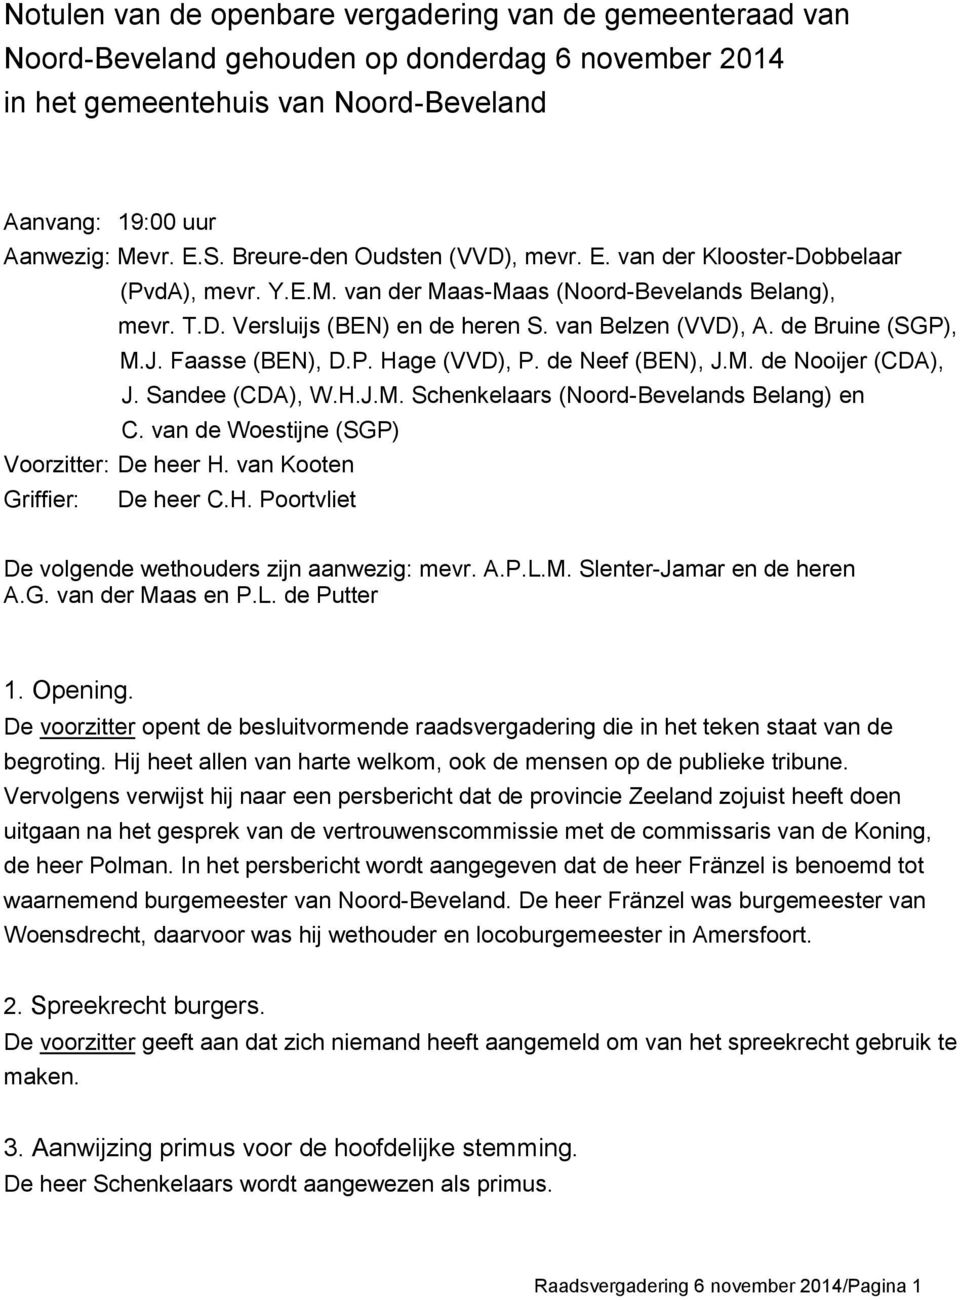 de Bruine (SGP), M.J. Faasse (BEN), D.P. Hage (VVD), P. de Neef (BEN), J.M. de Nooijer (CDA), J. Sandee (CDA), W.H.J.M. Schenkelaars (Noord-Bevelands Belang) en C.